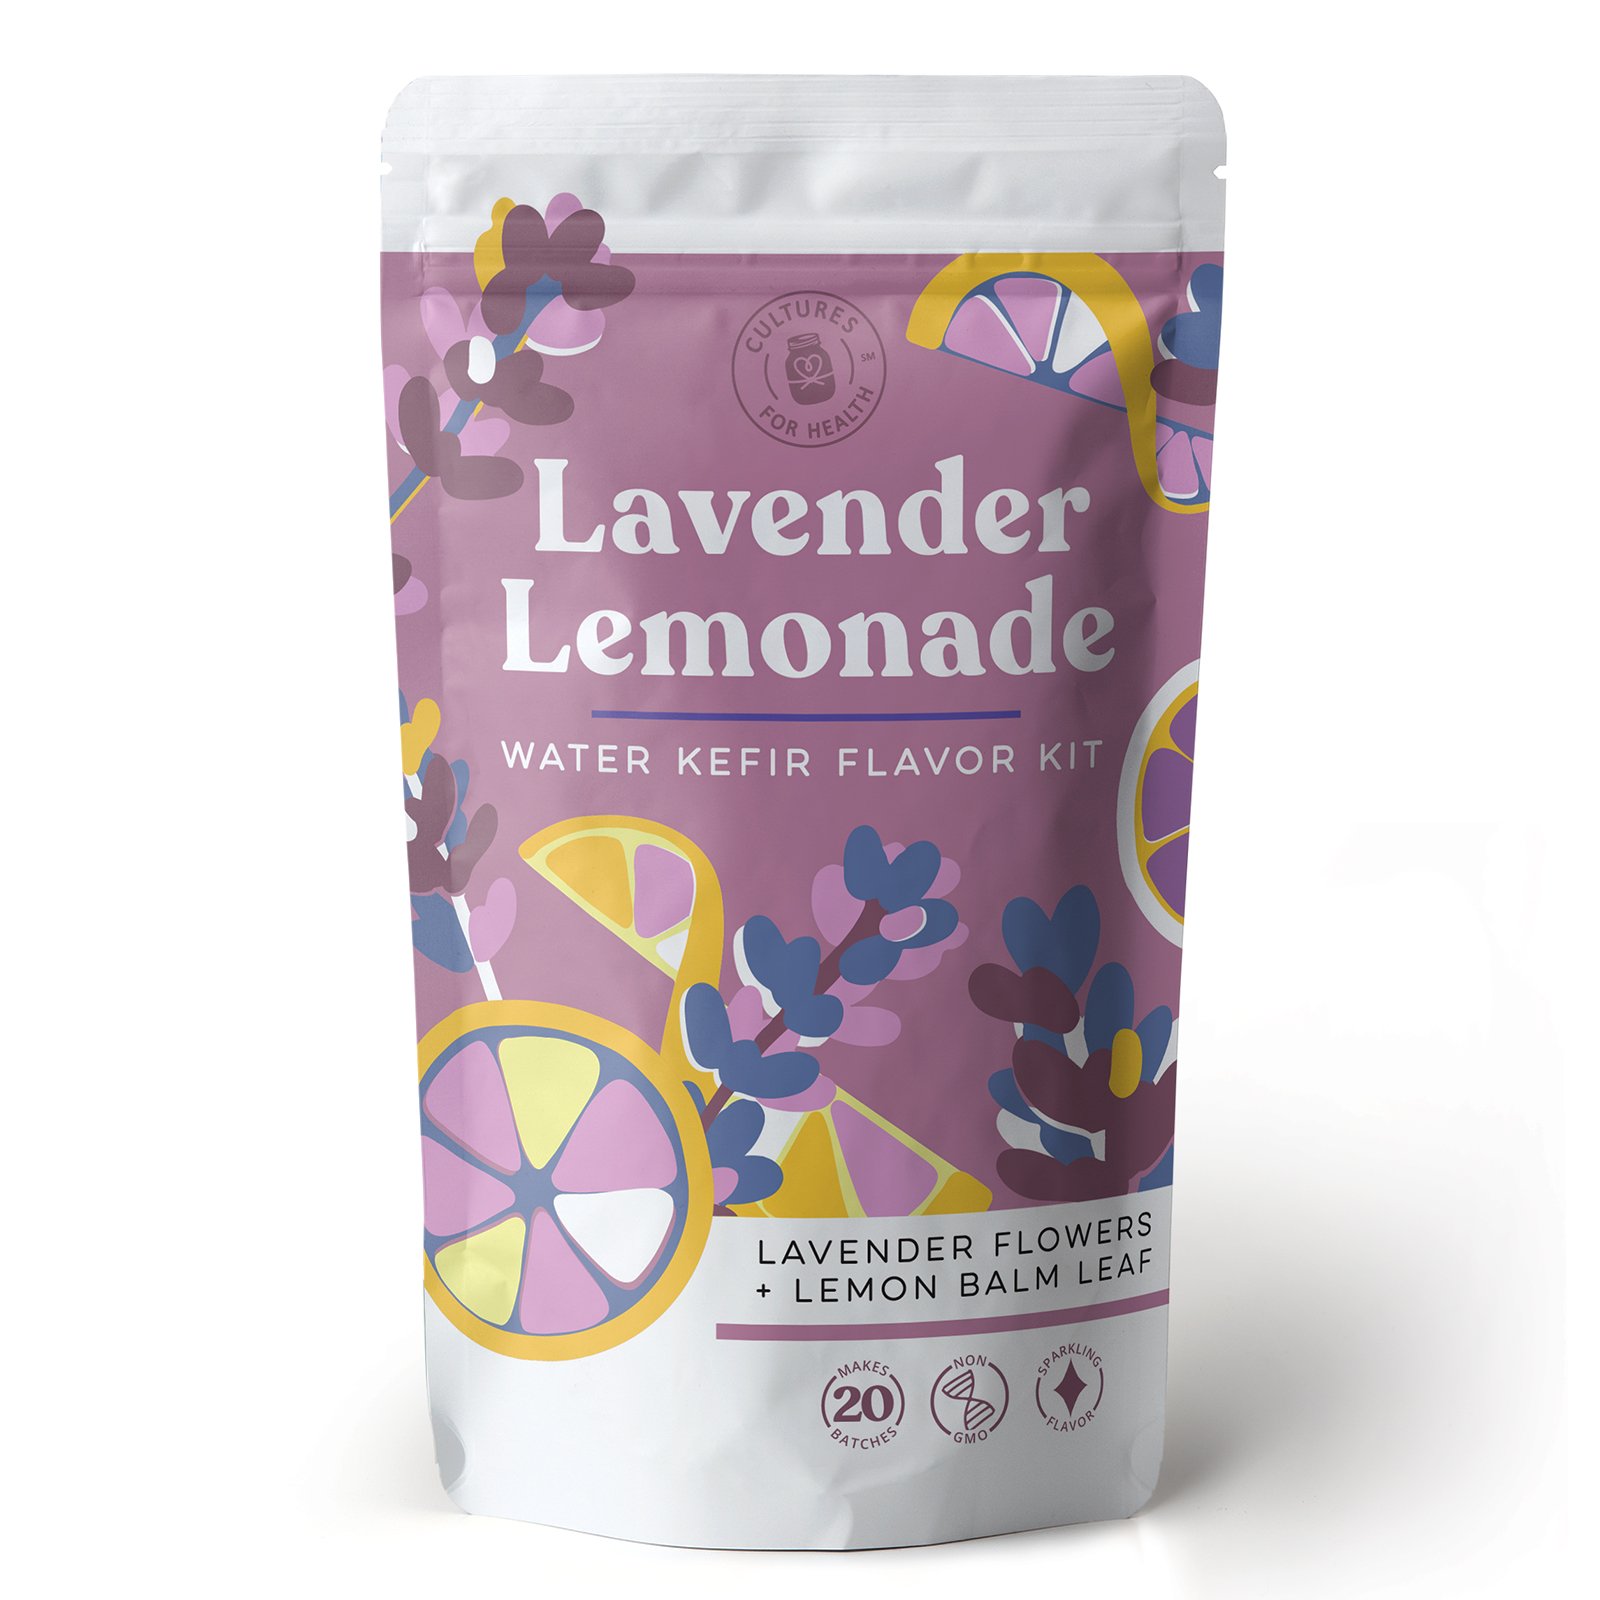 Lavender Lemonade Water Kefir Flavor Kit